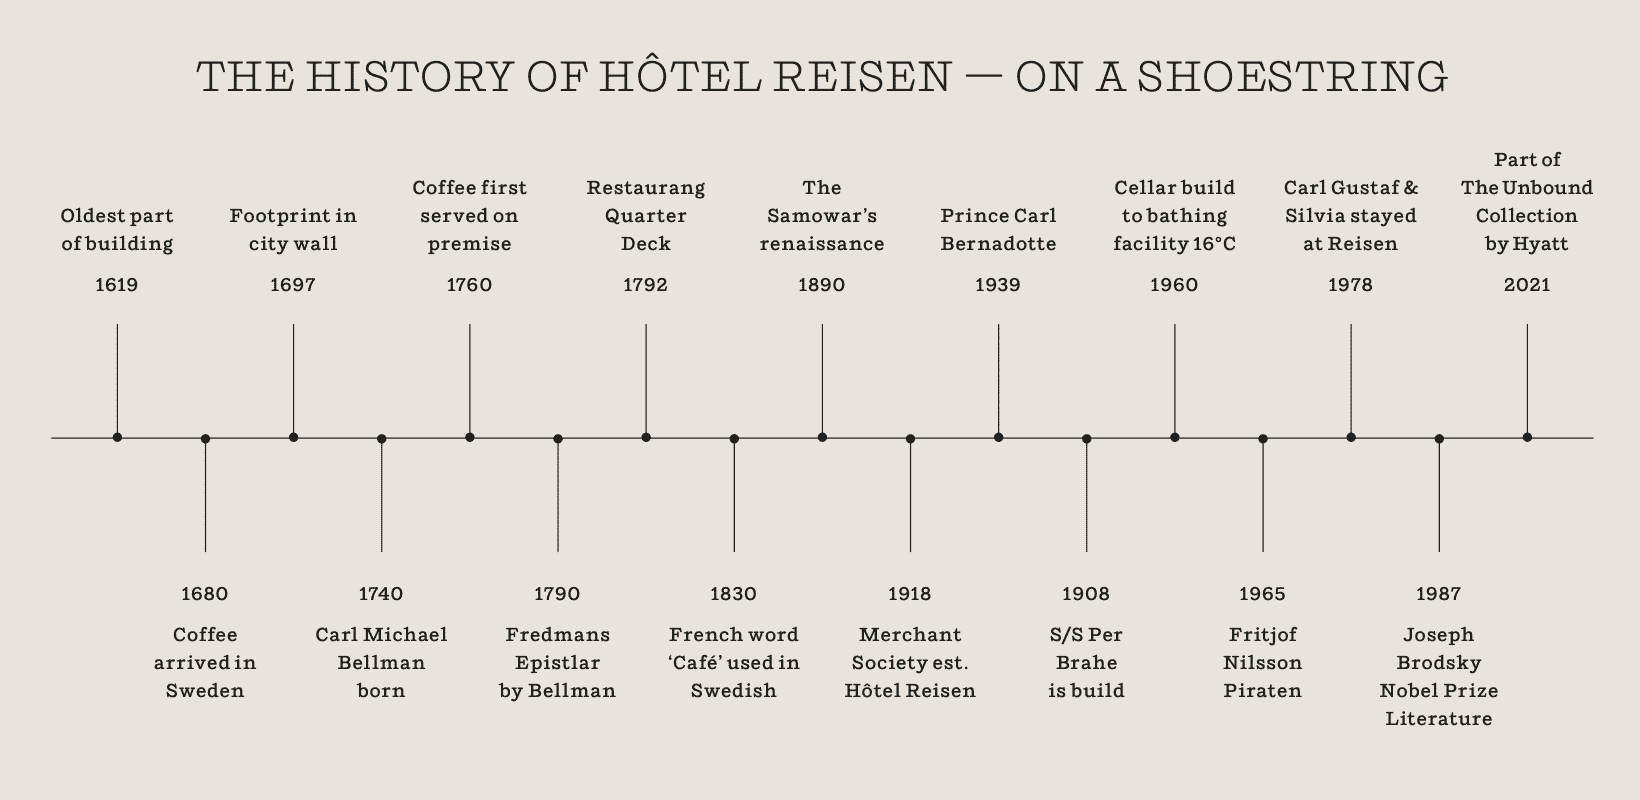 Timeline of Hotel Reisen's history